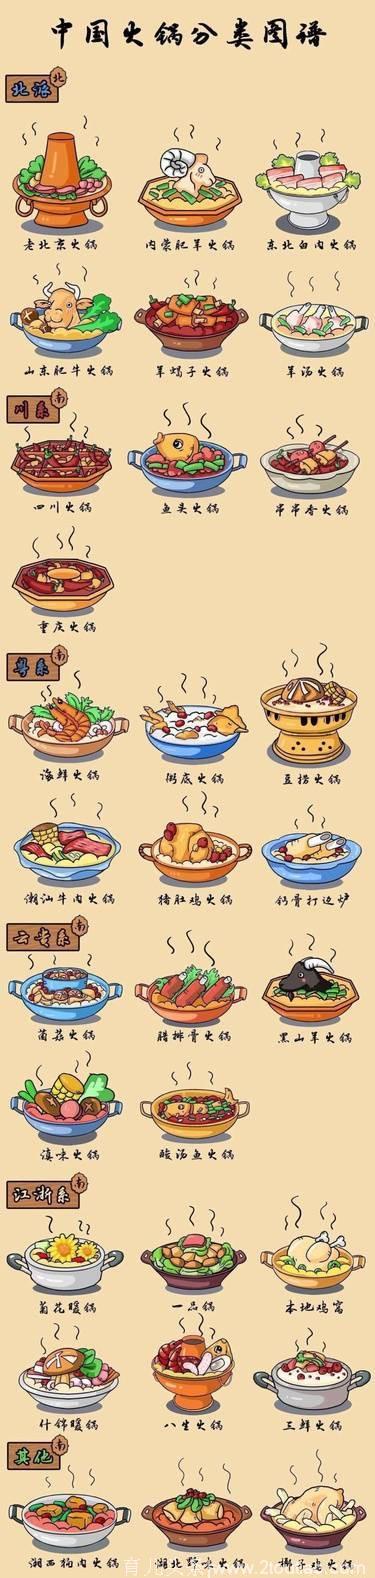 吃什么火锅就该蘸什么调料！别在火锅店调料自助台前迷茫了！